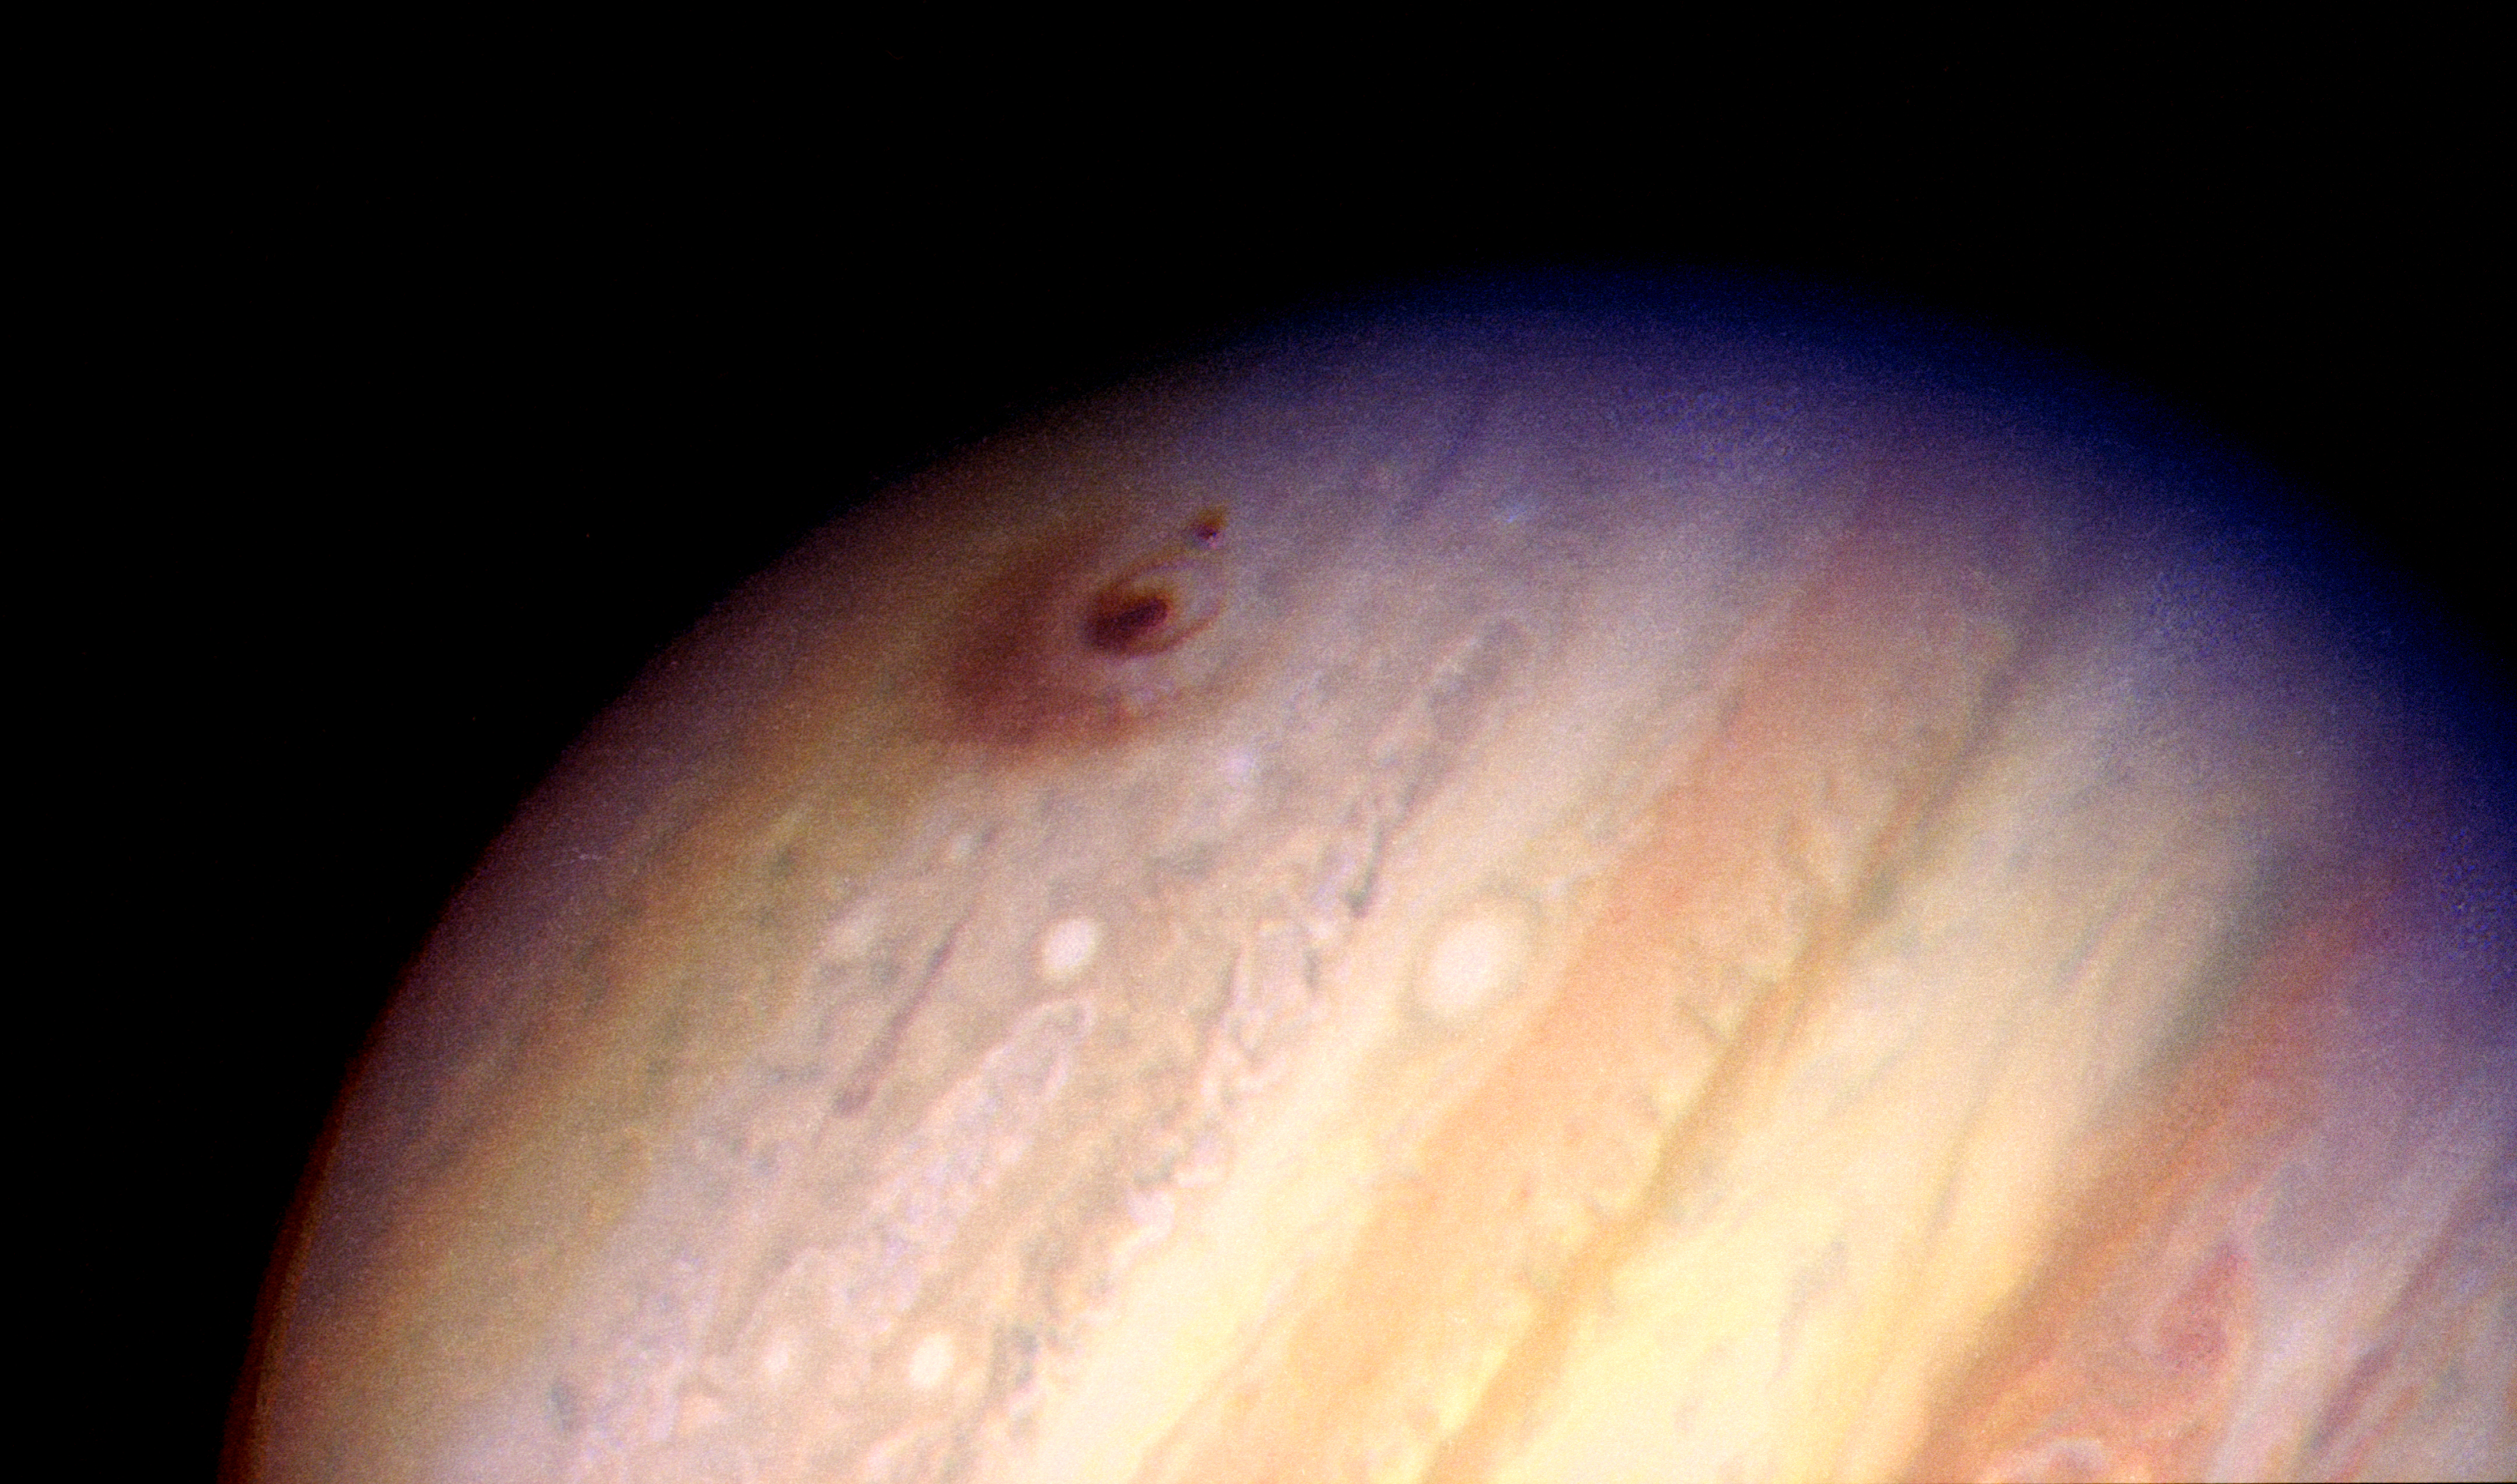 Ved Udrydde partikel Two Comet Shoemaker-Levy 9 Impact Sites on Jupiter (1994) | NASA Solar  System Exploration